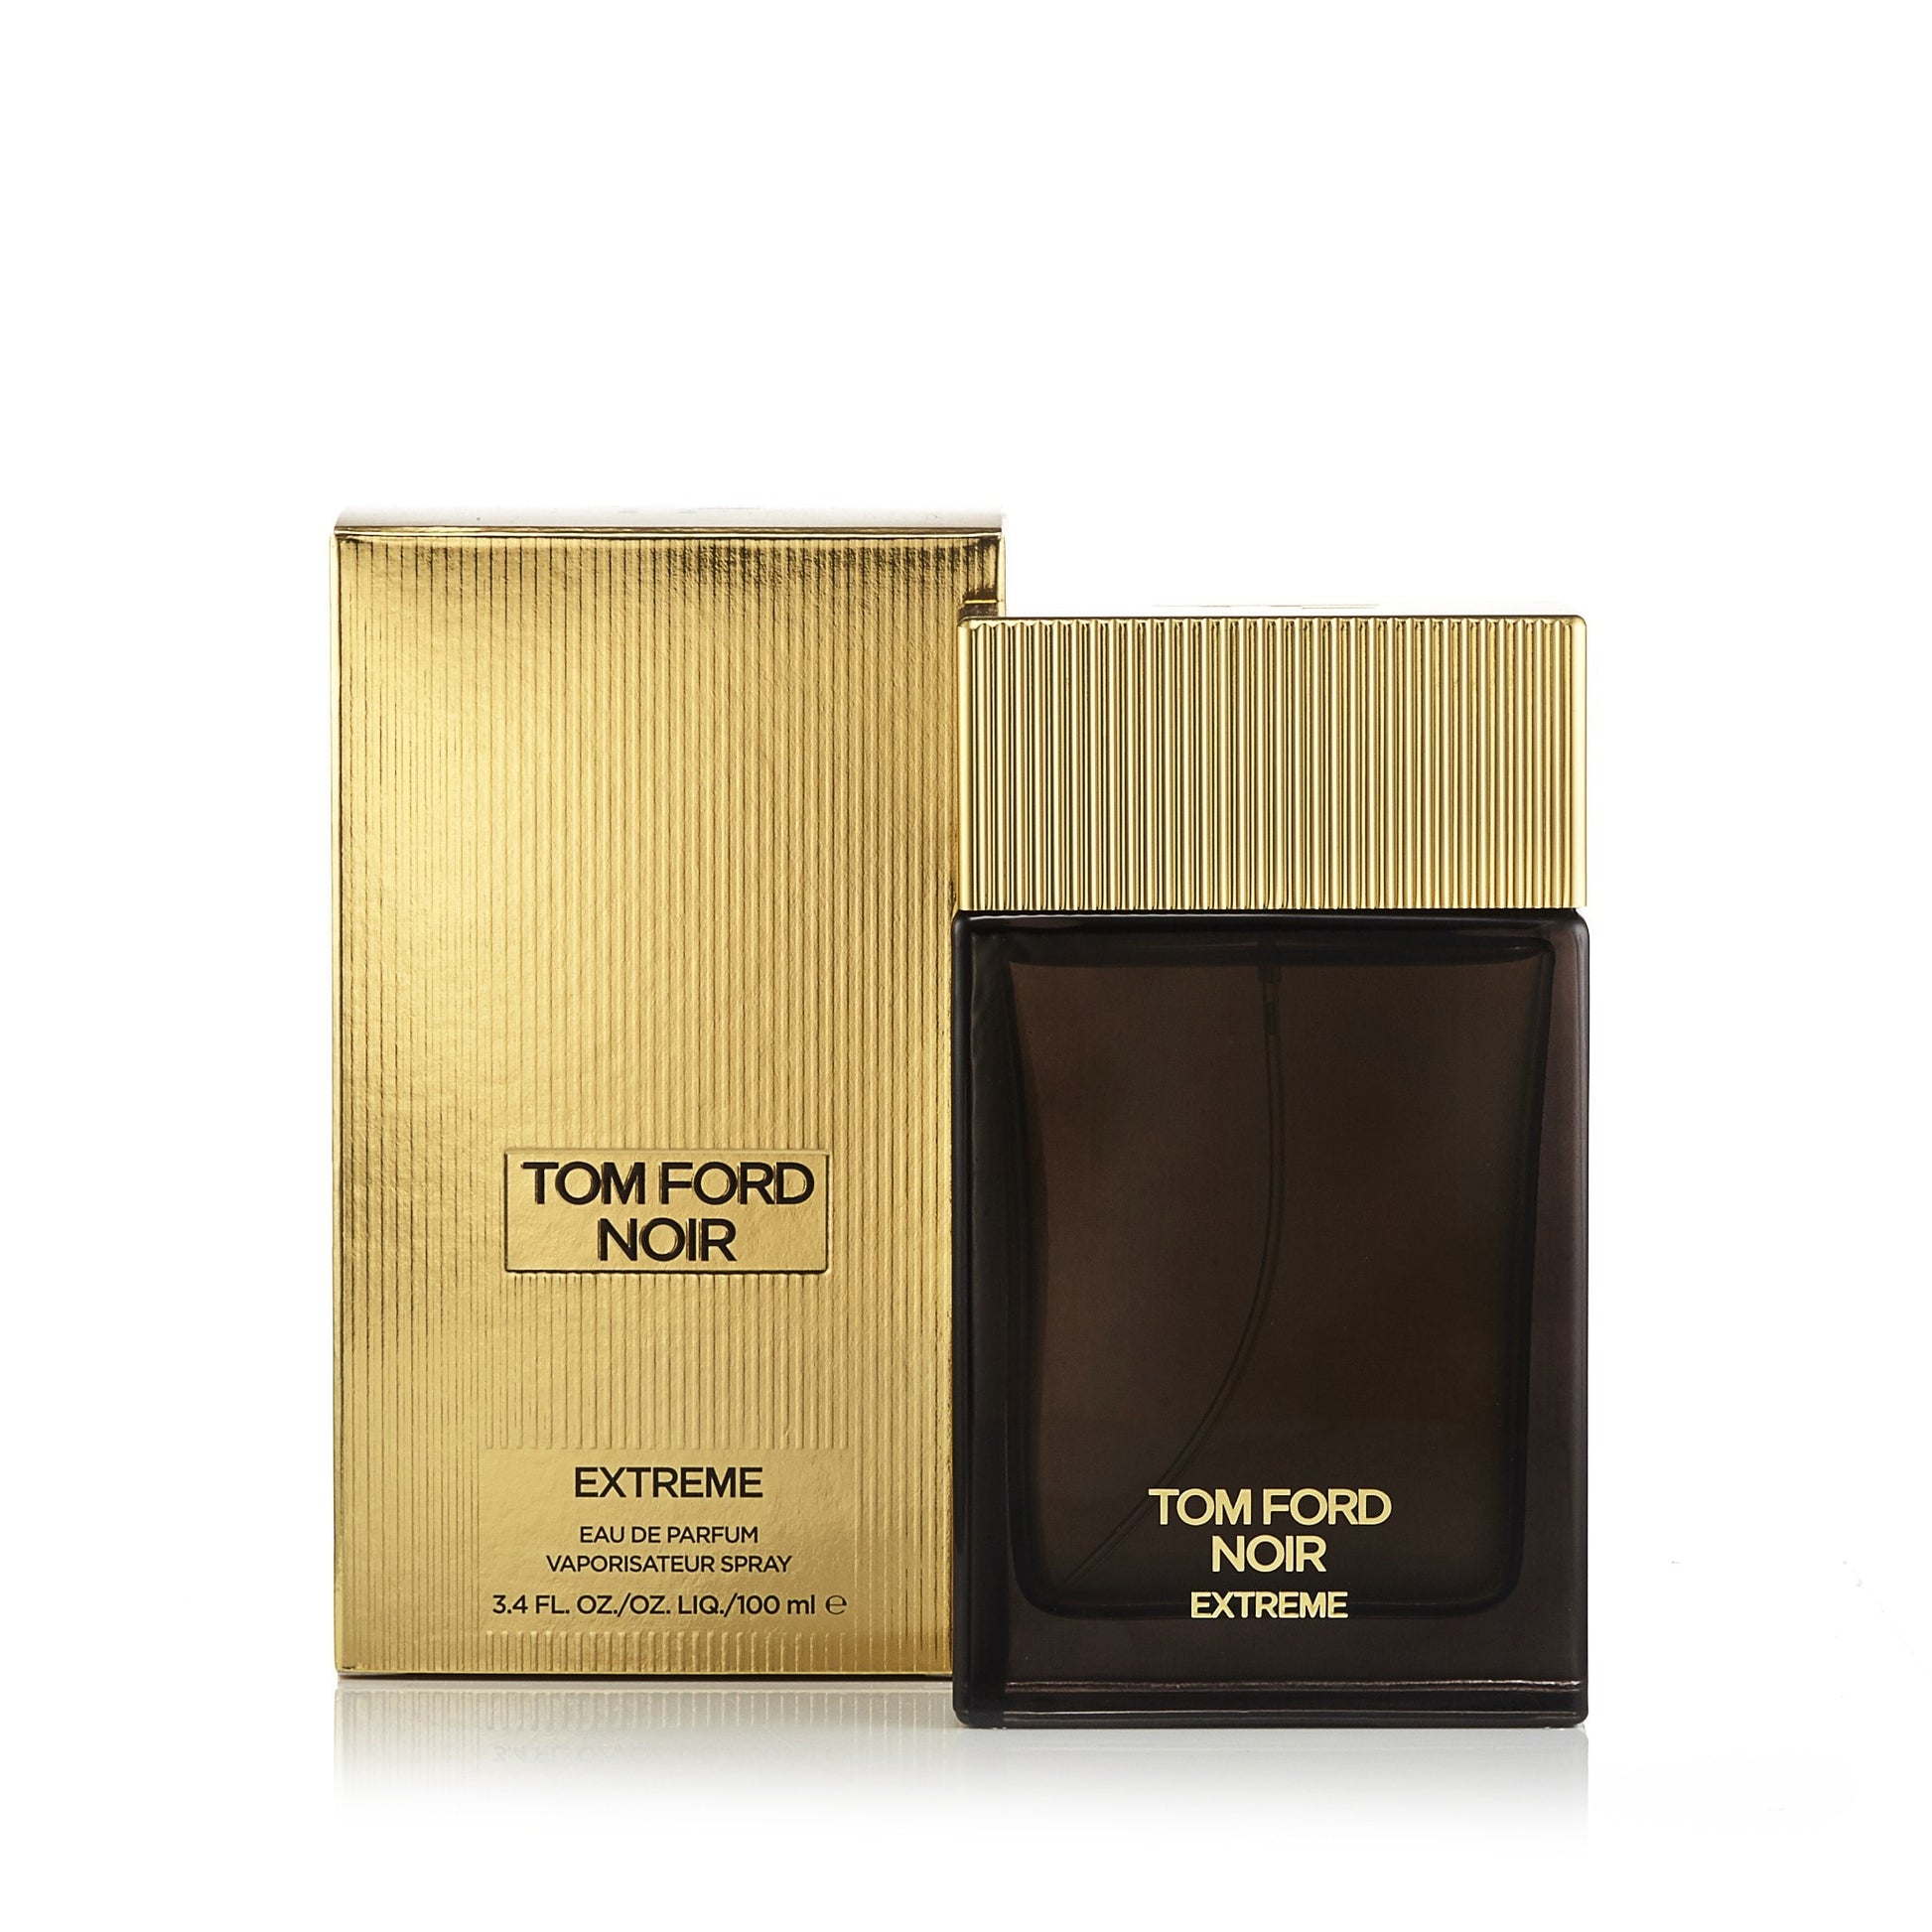 Tom Ford Noir Extreme Eau De Parfum Gift Set - 100ml